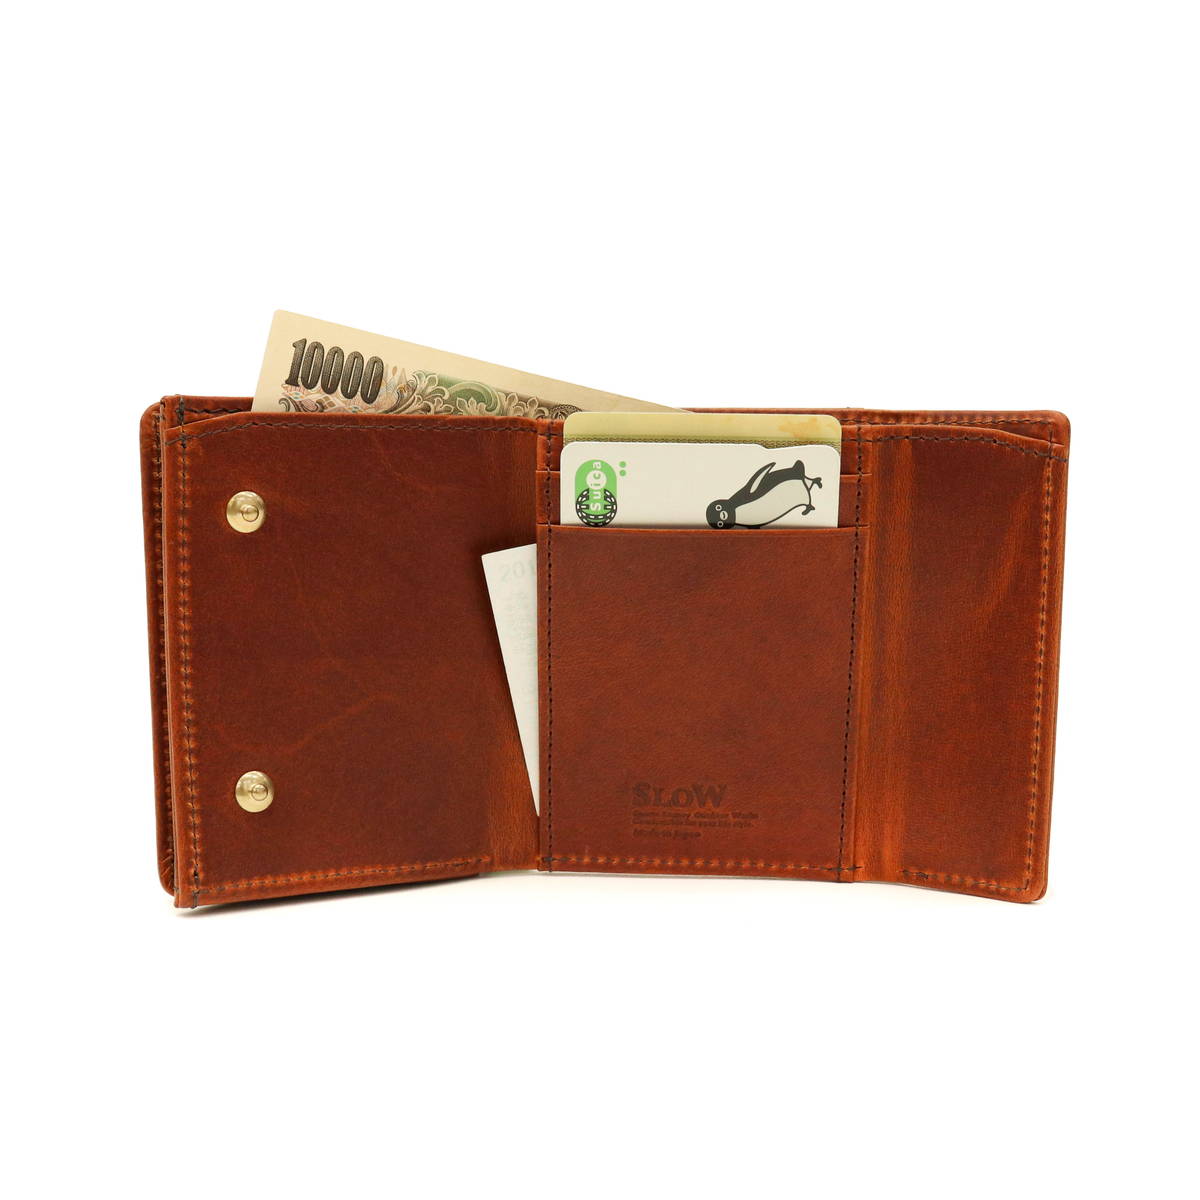 NEW新品 SLOW SLOW 三つ折り財布 b... : メンズバッグ・シューズ・小物 : スロウ 財布 通販人気